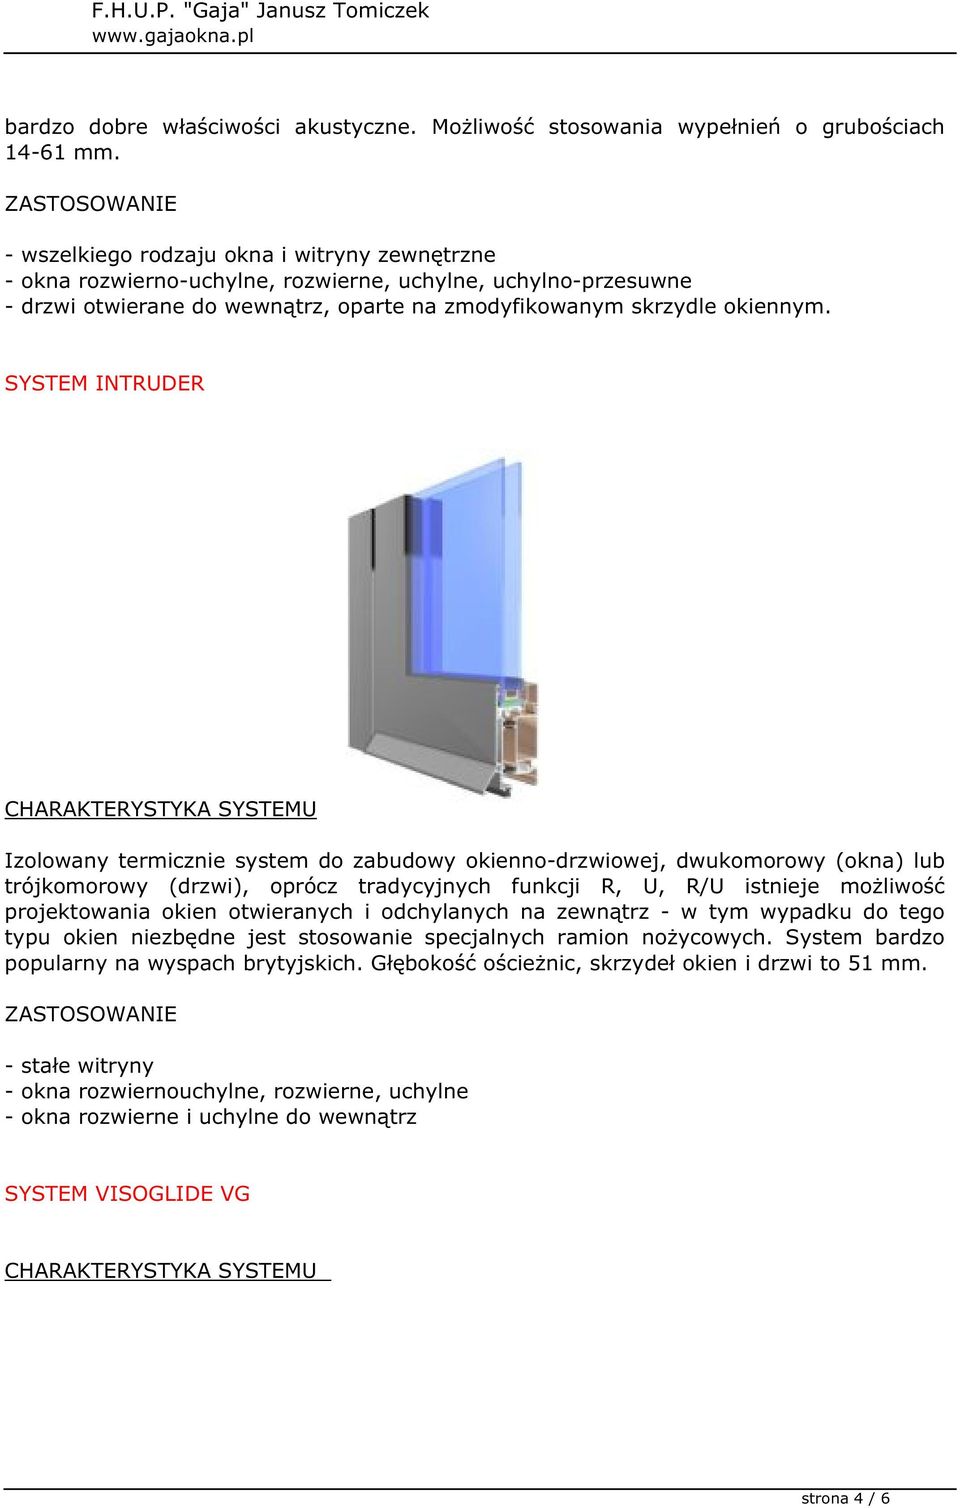 SYSTEM INTRUDER Izolowany termicznie system do zabudowy okienno-drzwiowej, dwukomorowy (okna) lub trójkomorowy (drzwi), oprócz tradycyjnych funkcji R, U, R/U istnieje możliwość projektowania okien